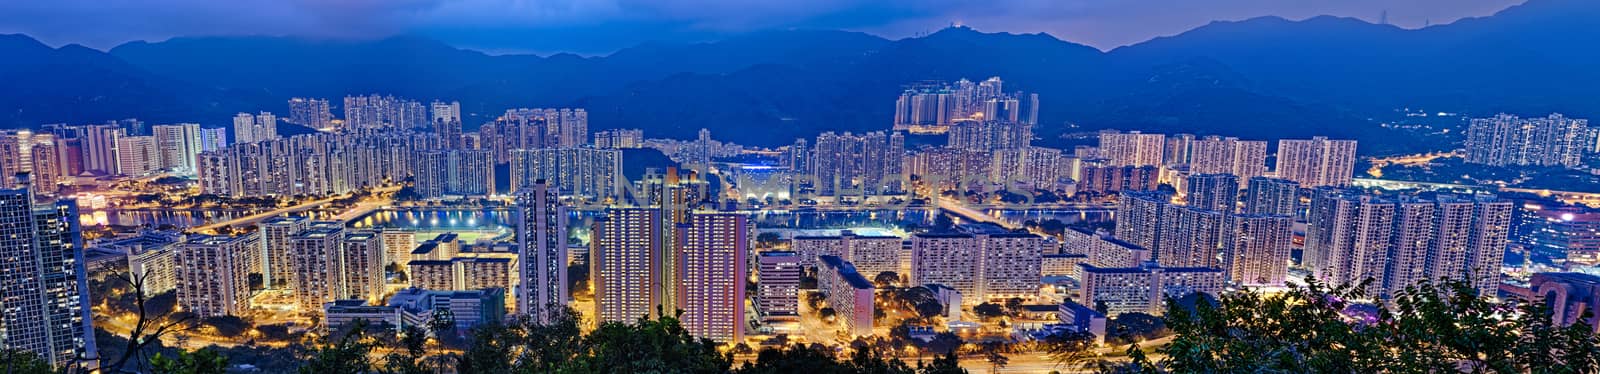 Hong Kong Sha Tin by cozyta